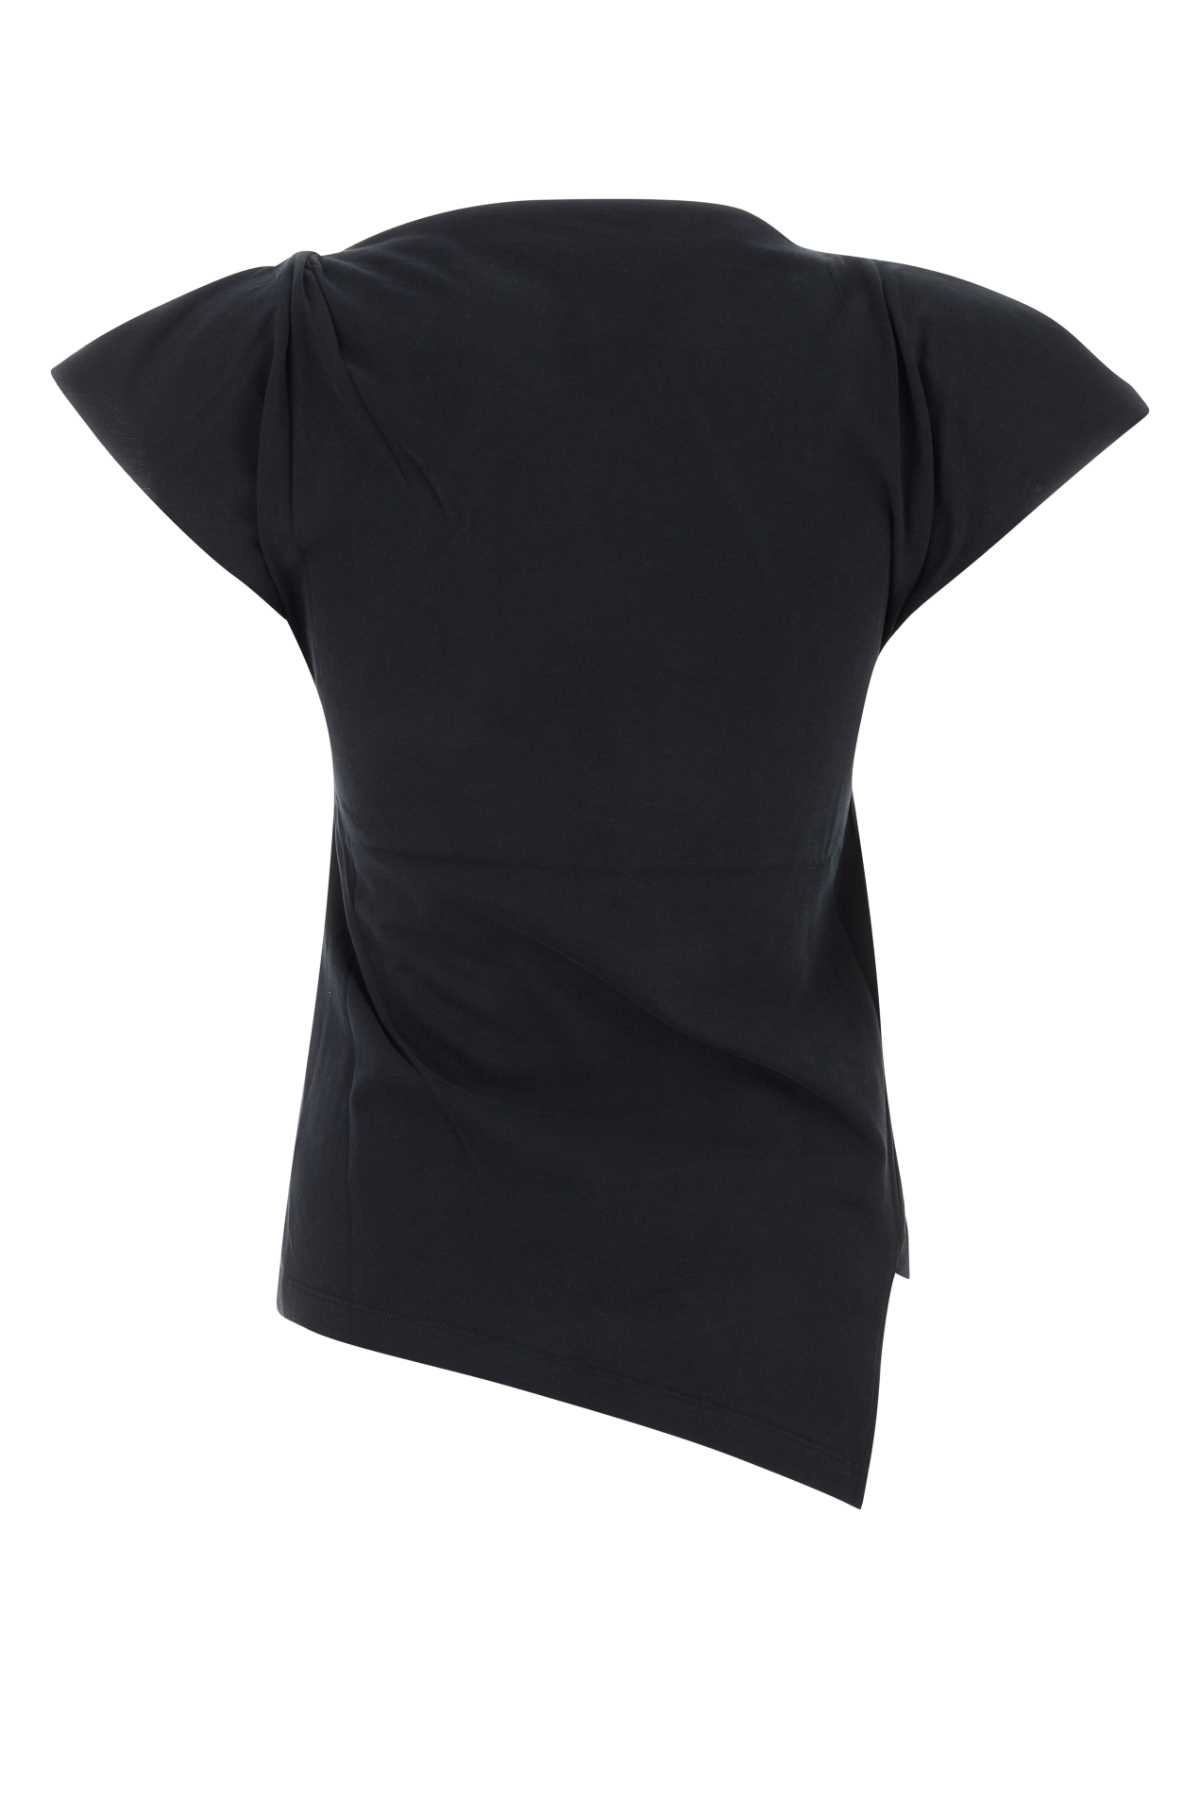 Shop Isabel Marant Black Cotton Sebani T-shirt